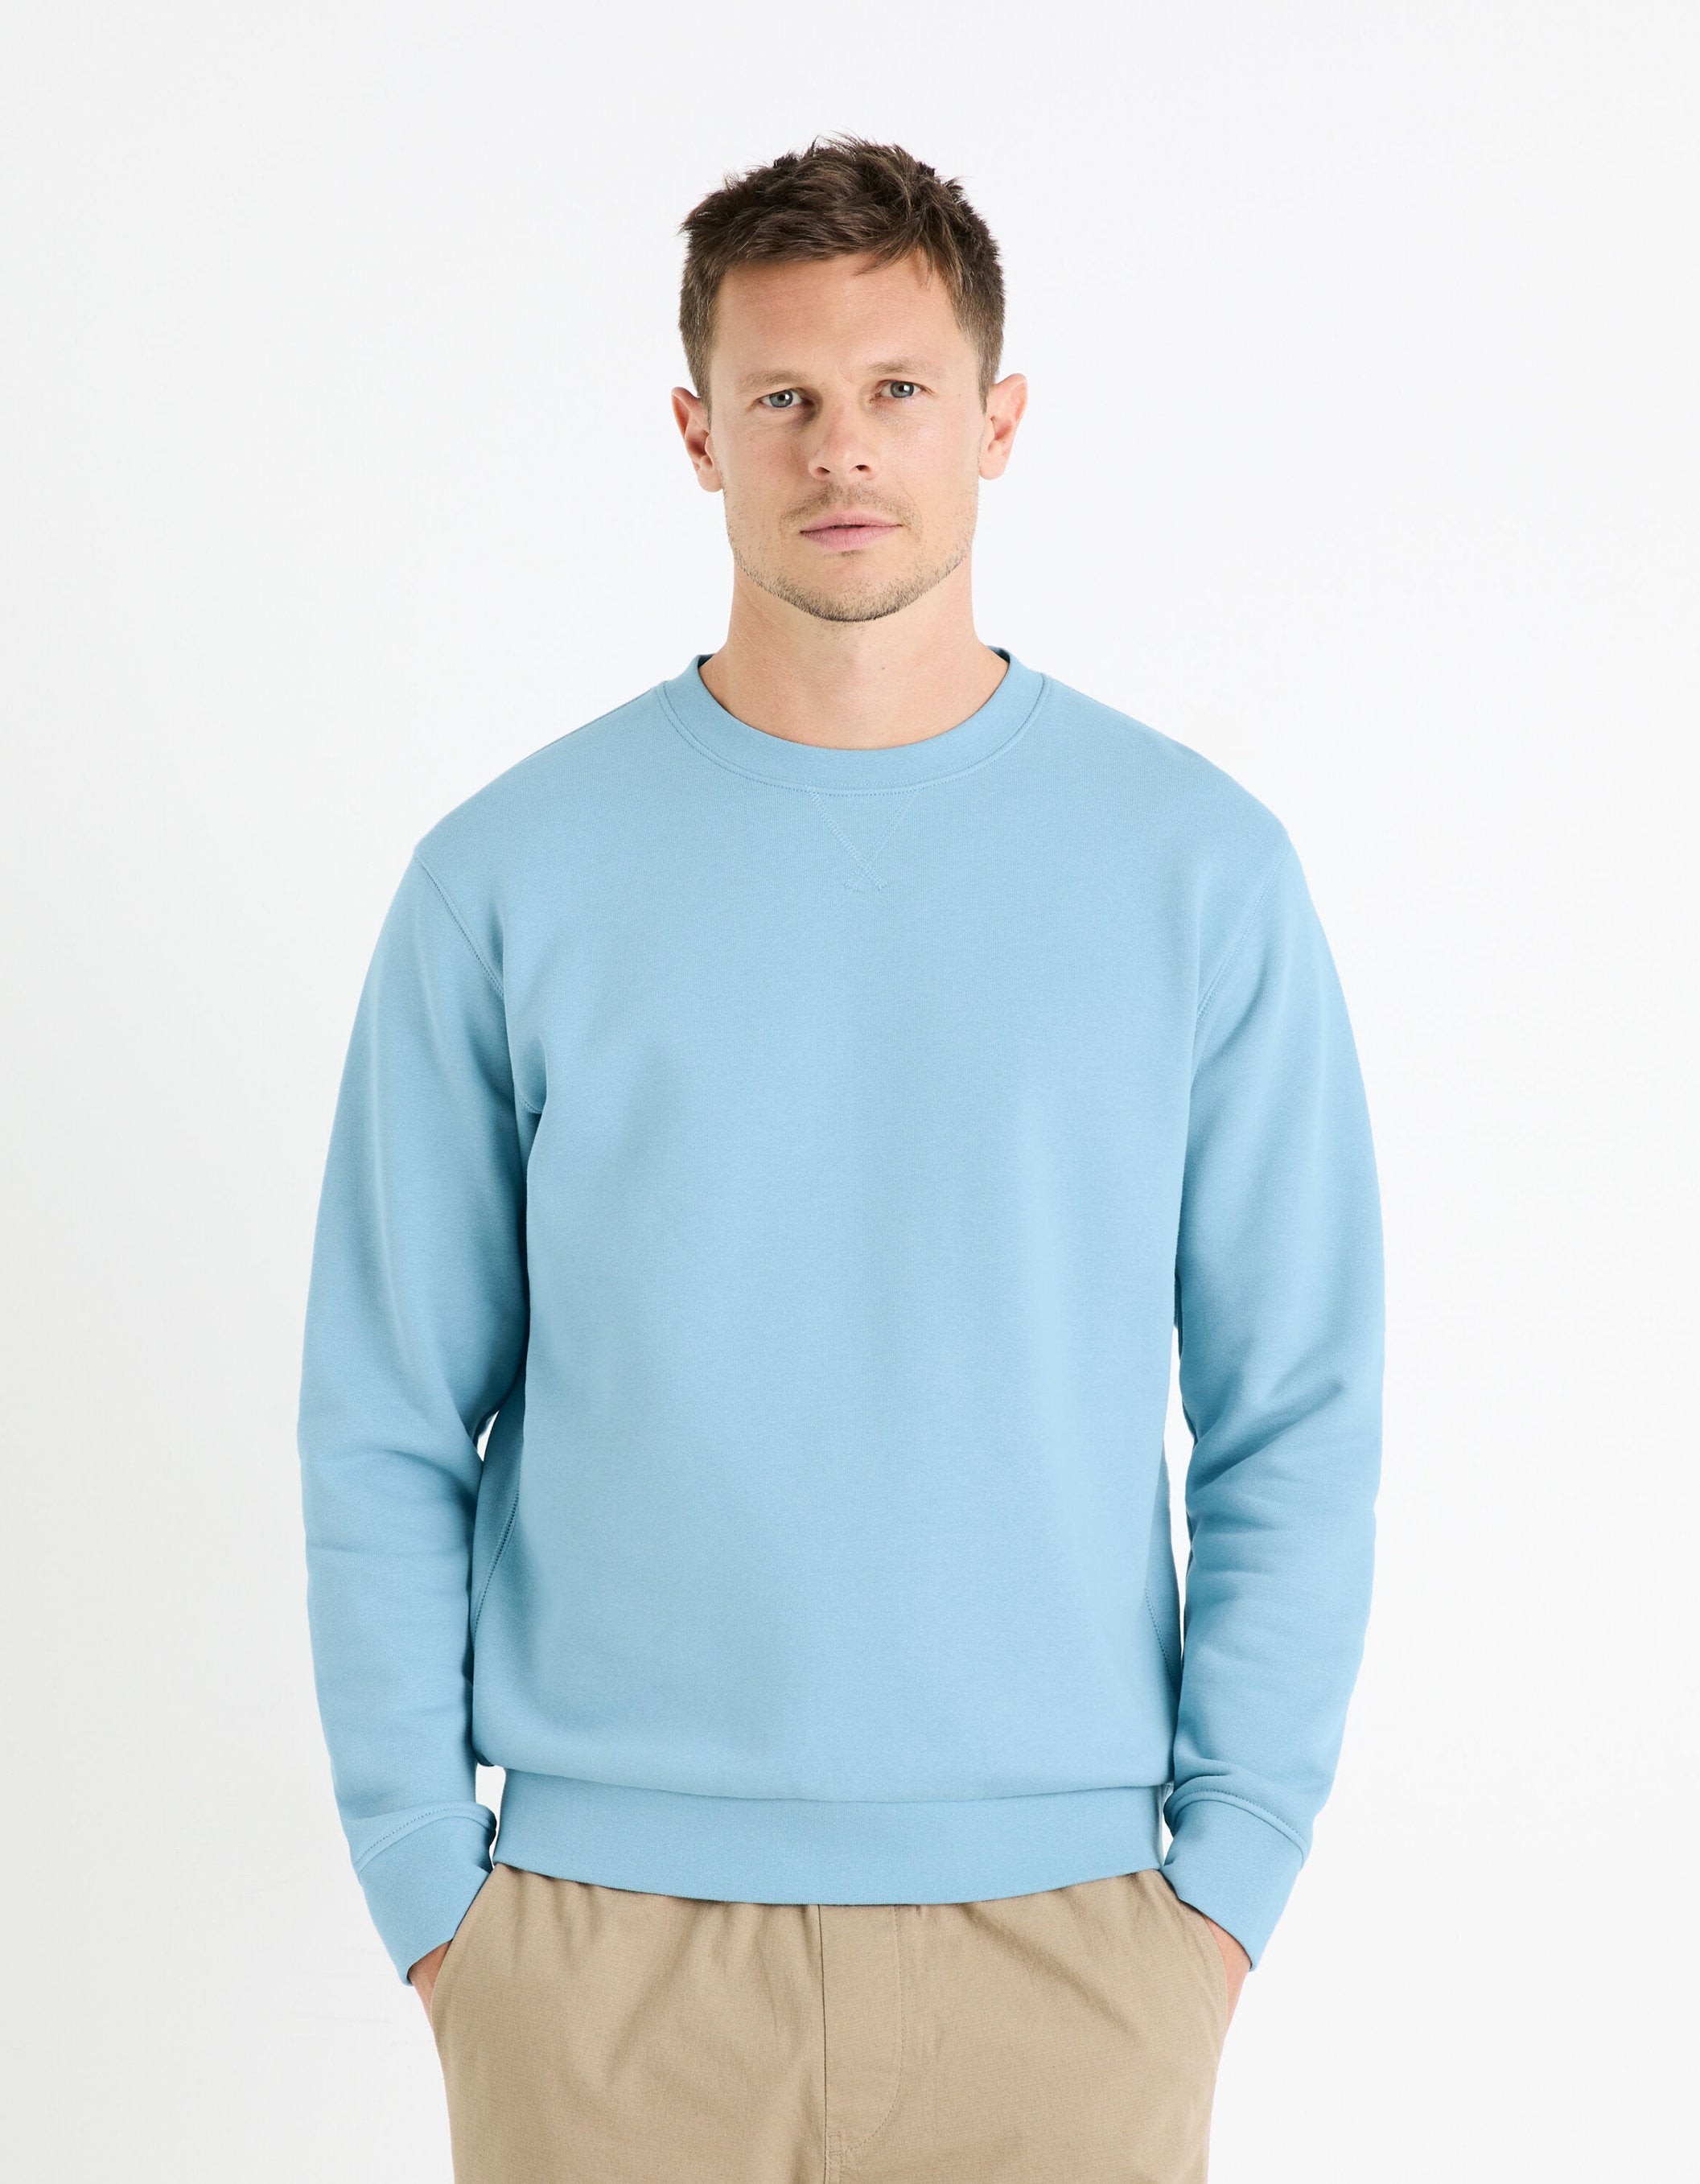 Round Neck Sweatshirt 100% Cotton_FESEVEN_BLUE 01_03